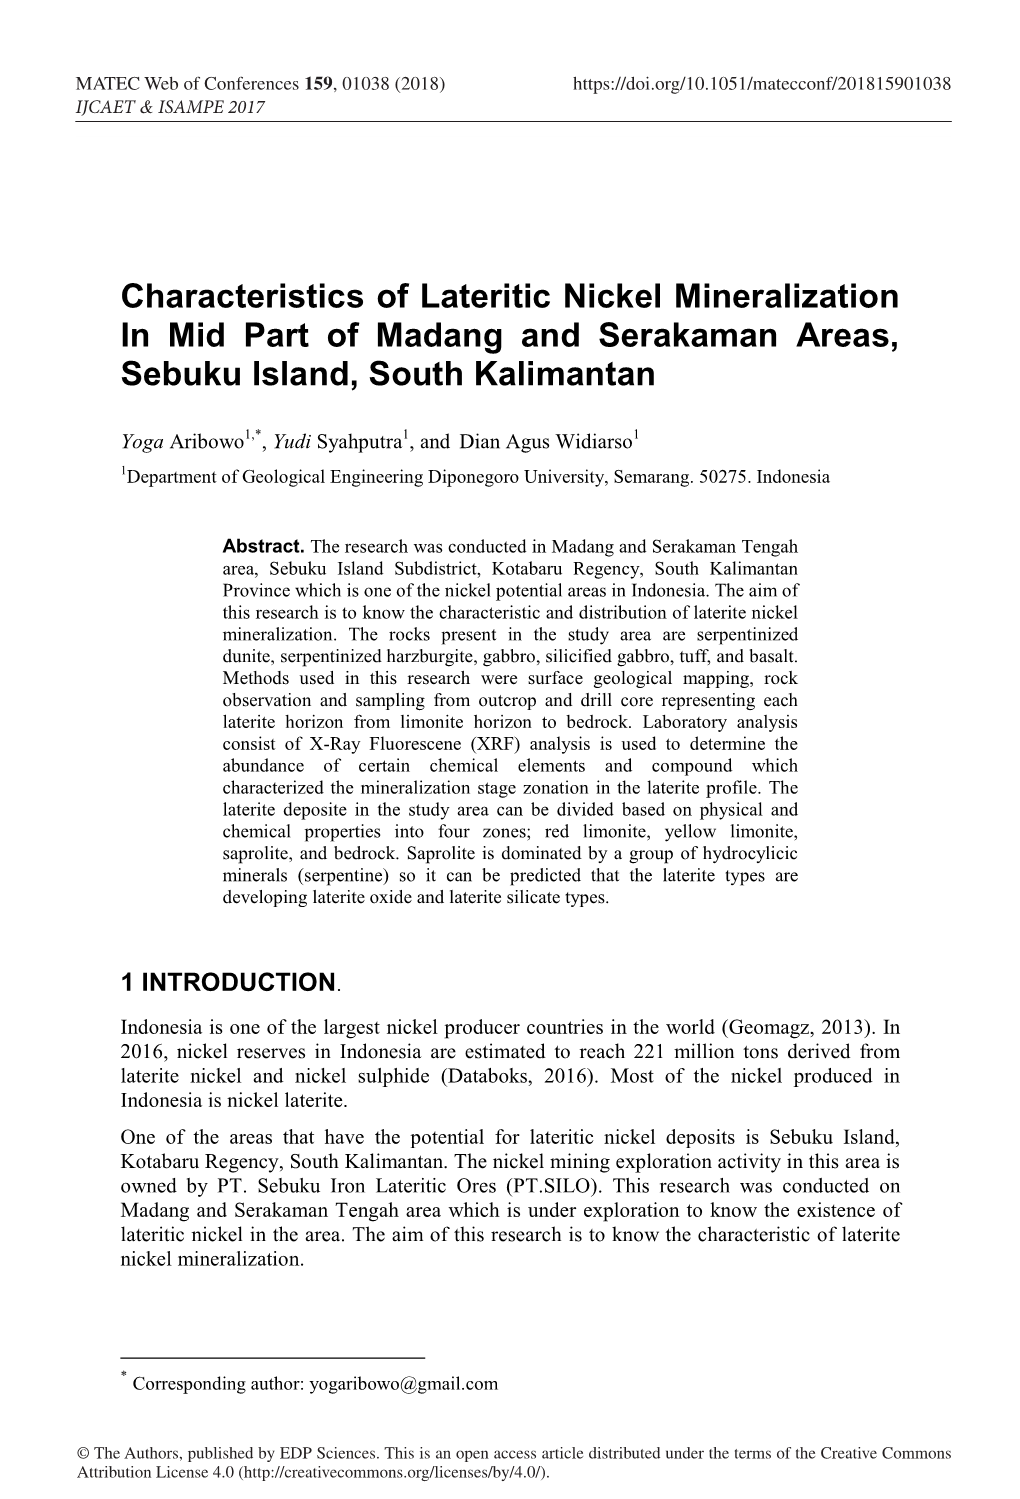 Characteristics of Lateritic Nickel Mineralization in Mid Part of Madang and Serakaman Areas, Sebuku Island, South Kalimantan